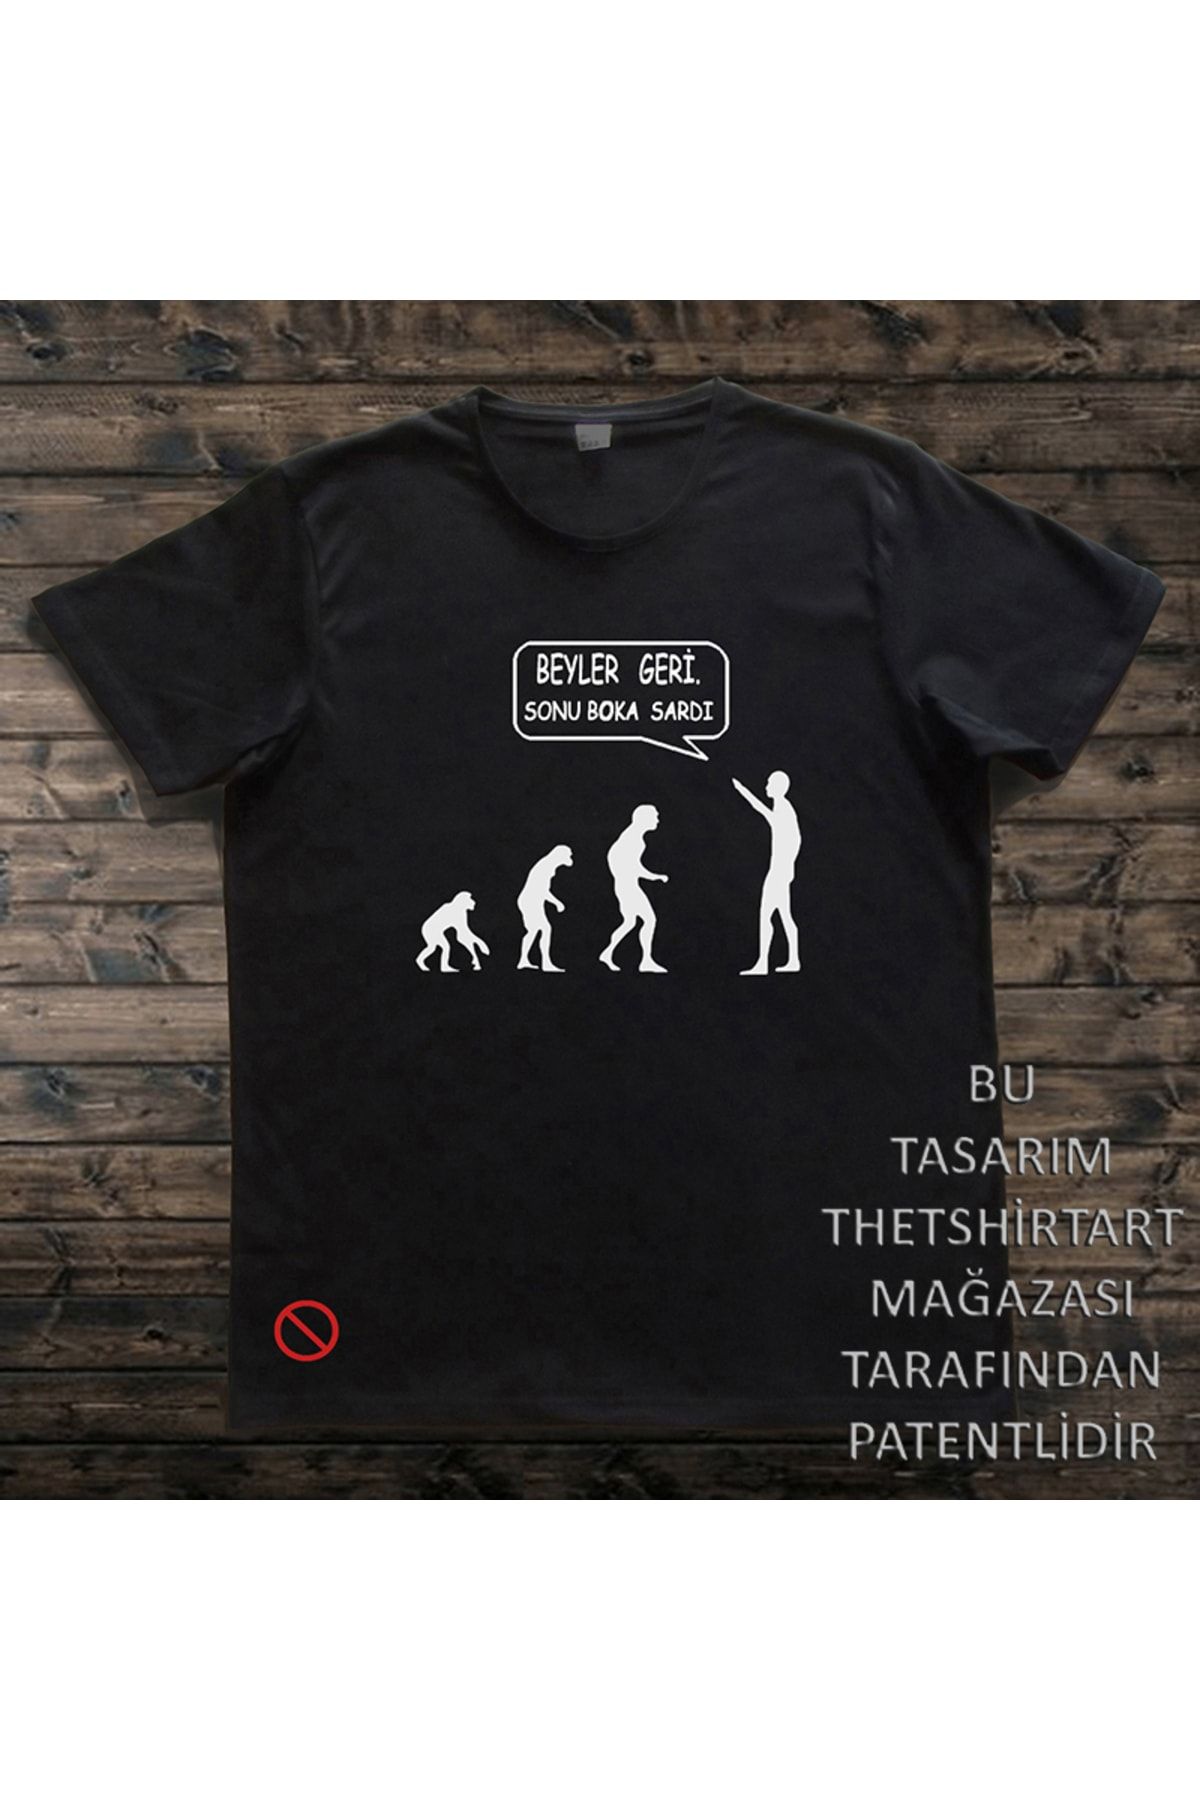 DESİGNER Insan Evrimi Evolution Tişört (CRO MAGNON) Komik Karikatür Yazılı Tişört